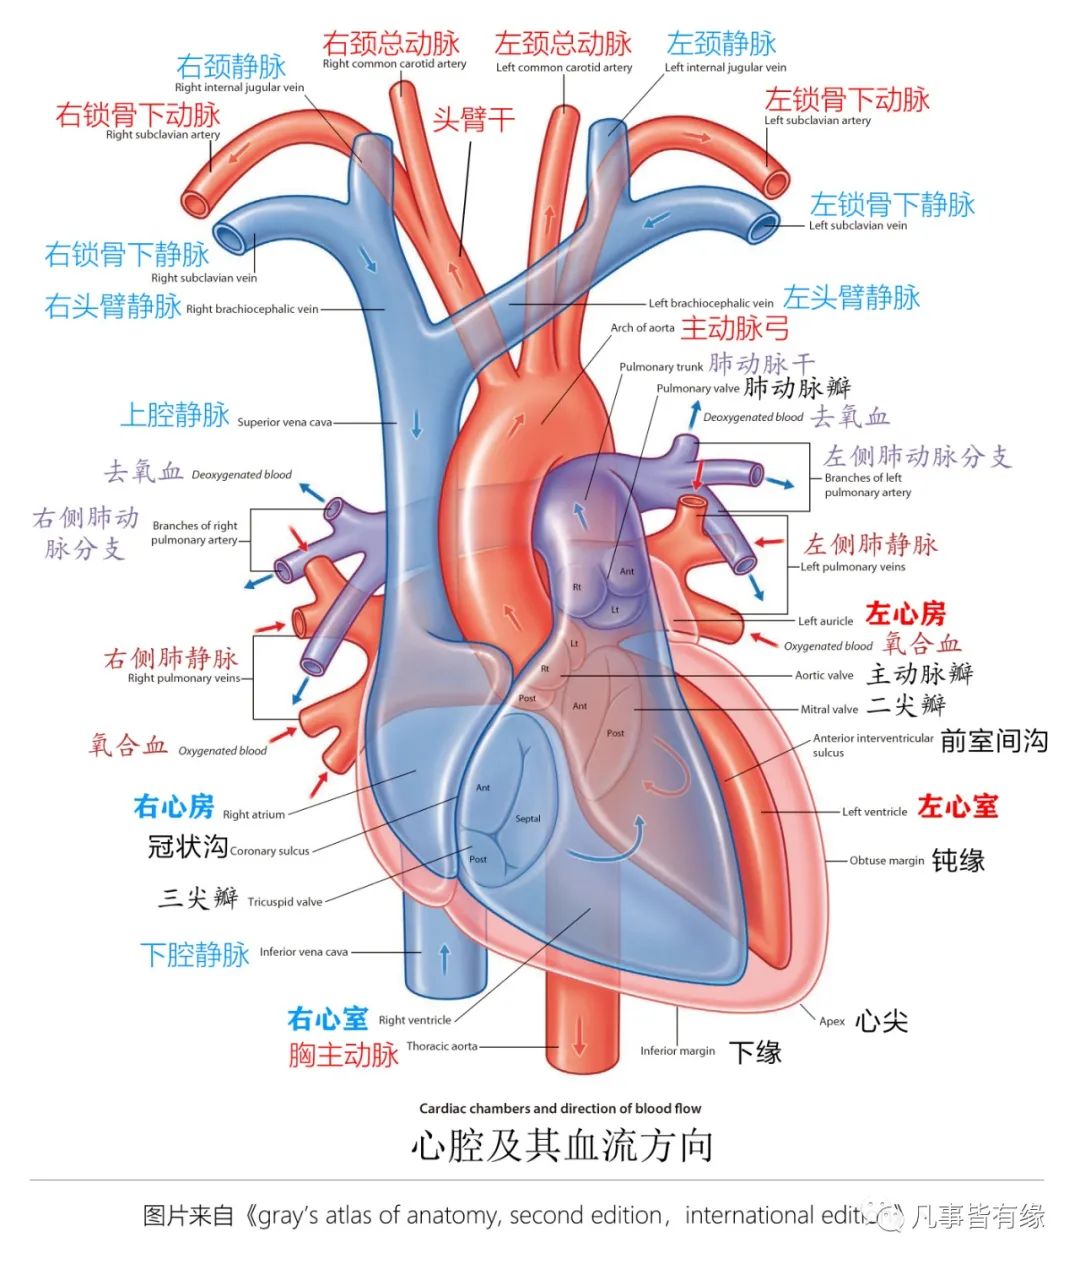 心脏大循环和小循环示意图_39健康网